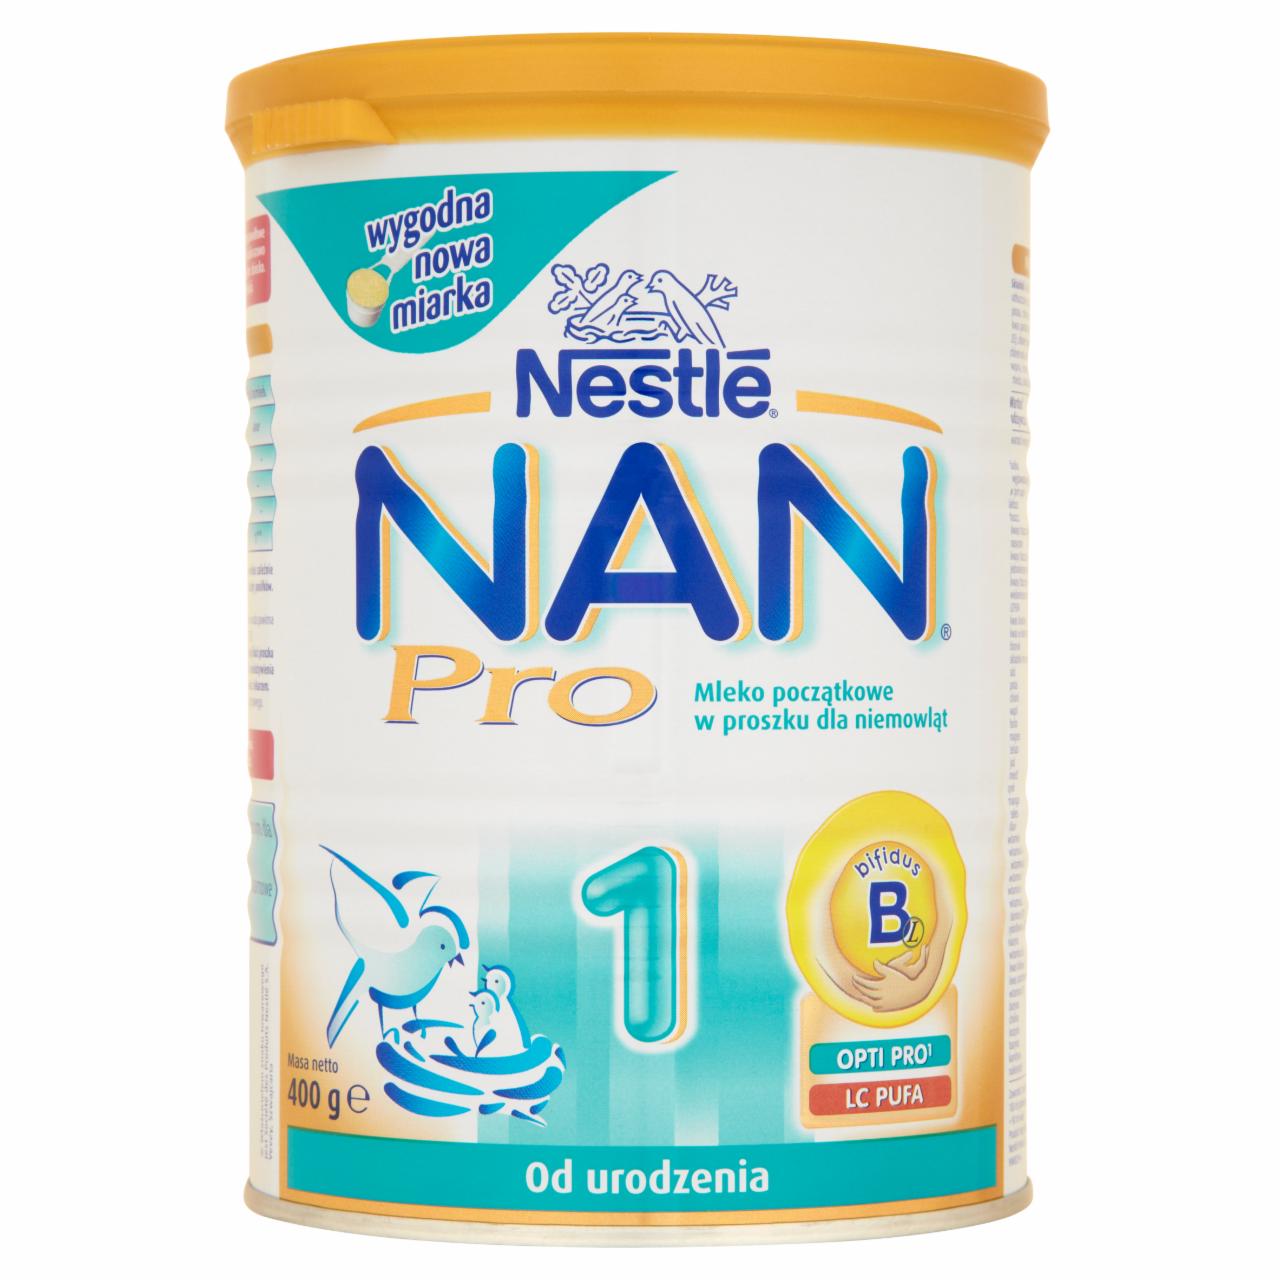 Zdjęcia - Nestlé Nan Pro 1 Mleko początkowe w proszku dla niemowląt od urodzenia 400 g